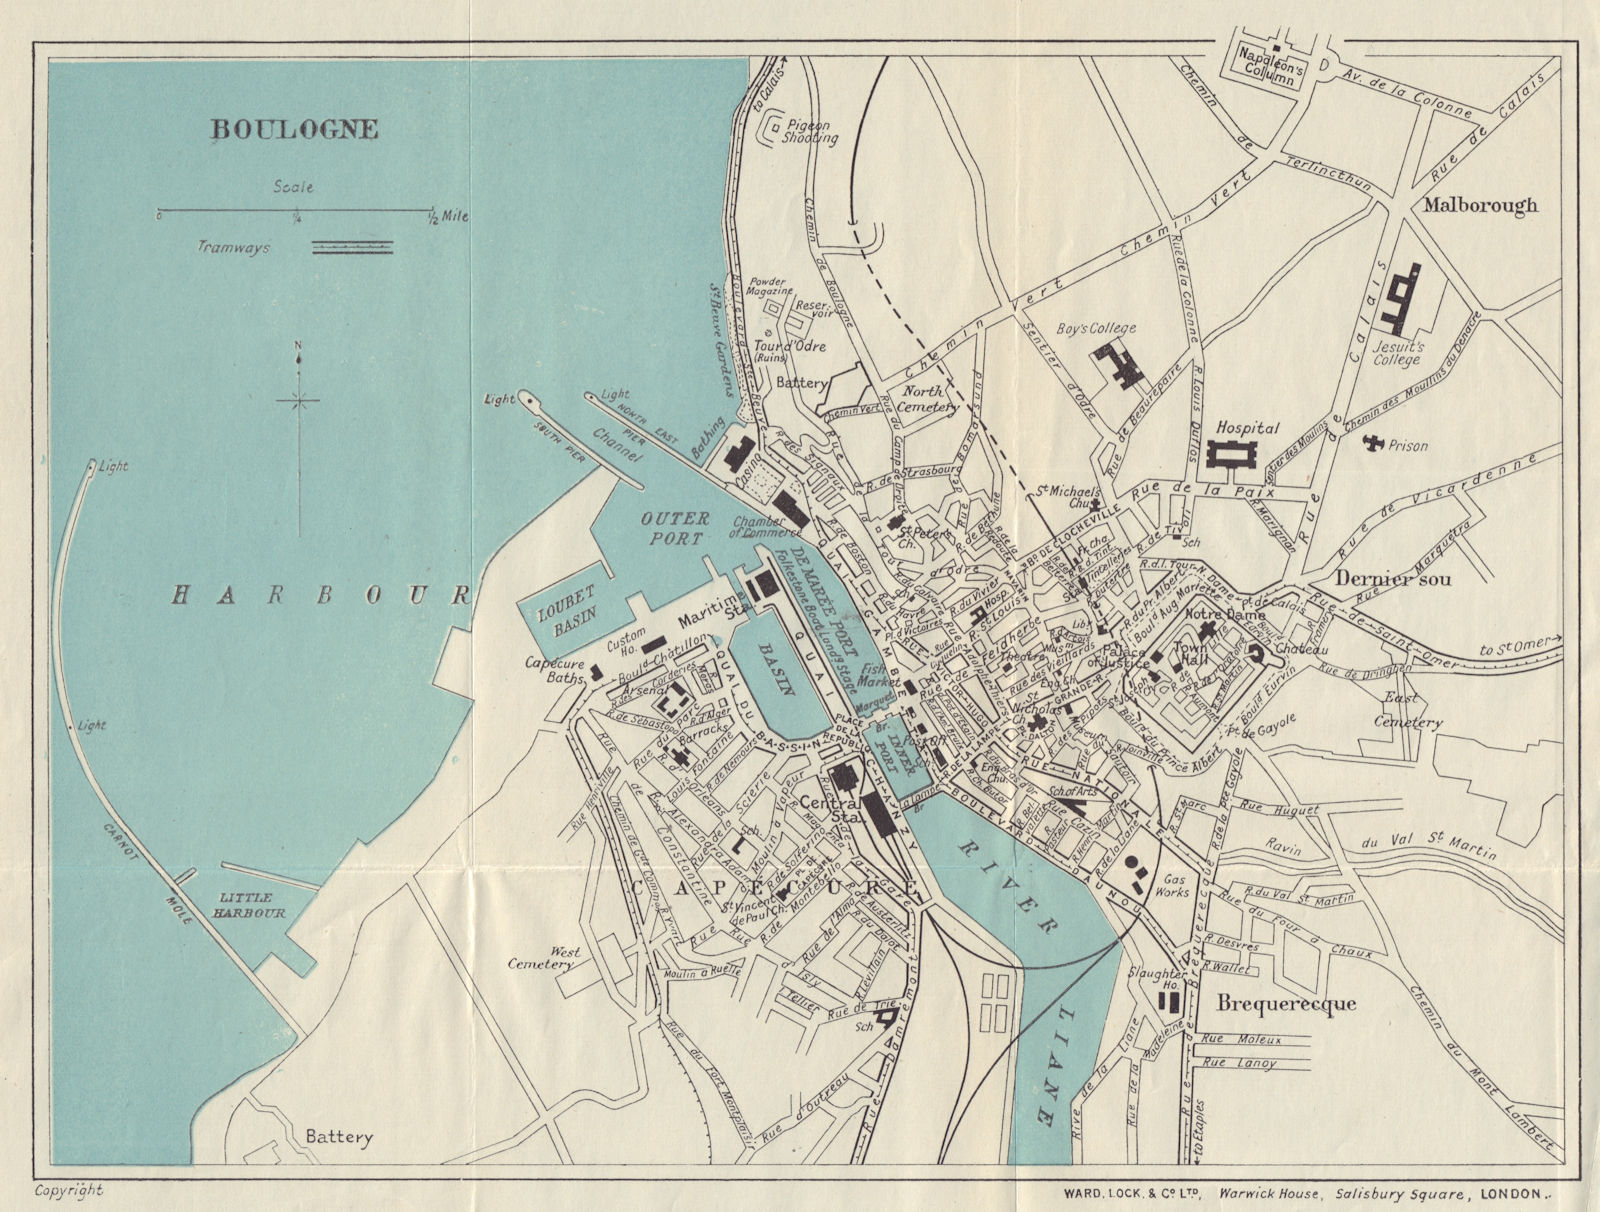 BOULOGNE vintage tourist town city plan. Pas-de-Calais. WARD LOCK 1924 old map